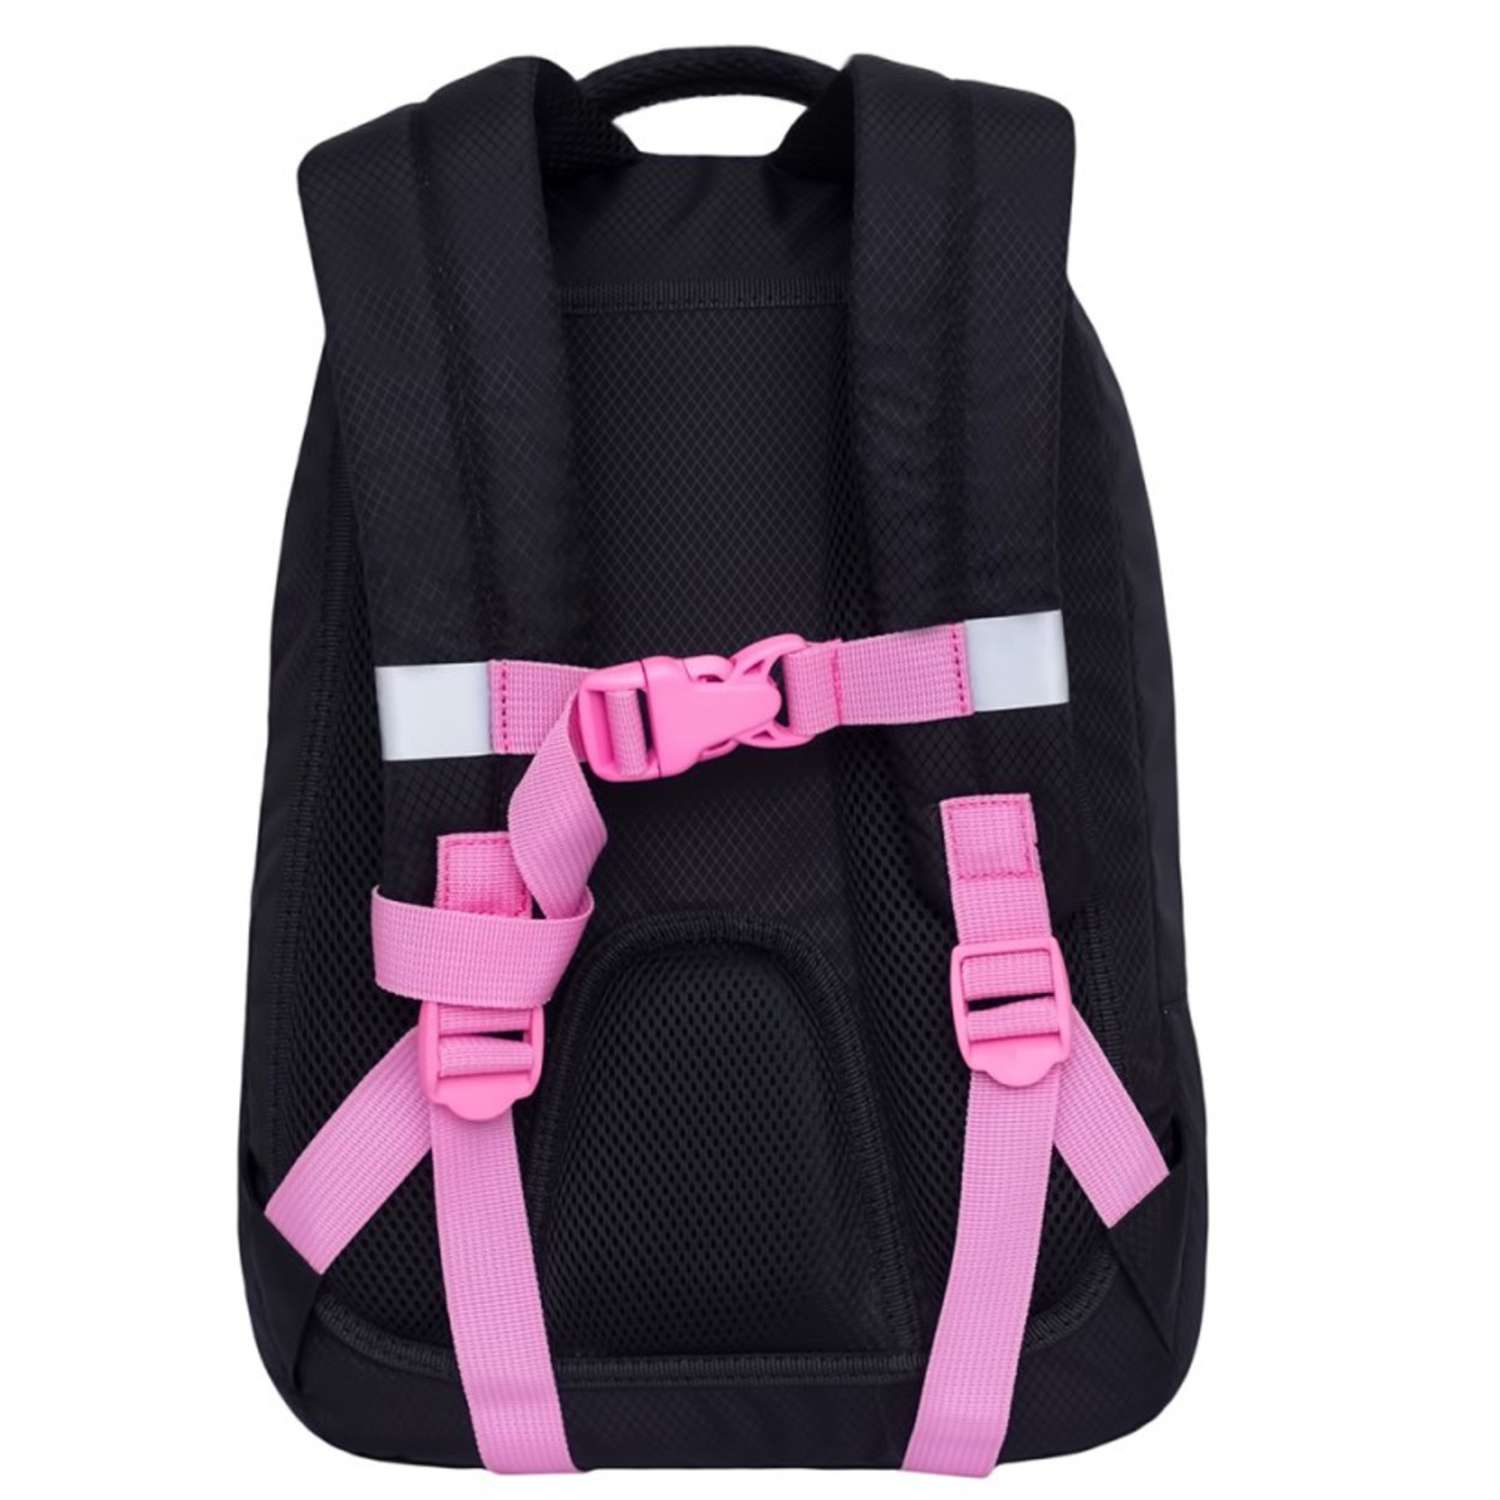 Рюкзак школьный Grizzly Фламинго Черный-Розовый RG-967-1/1 - фото 2